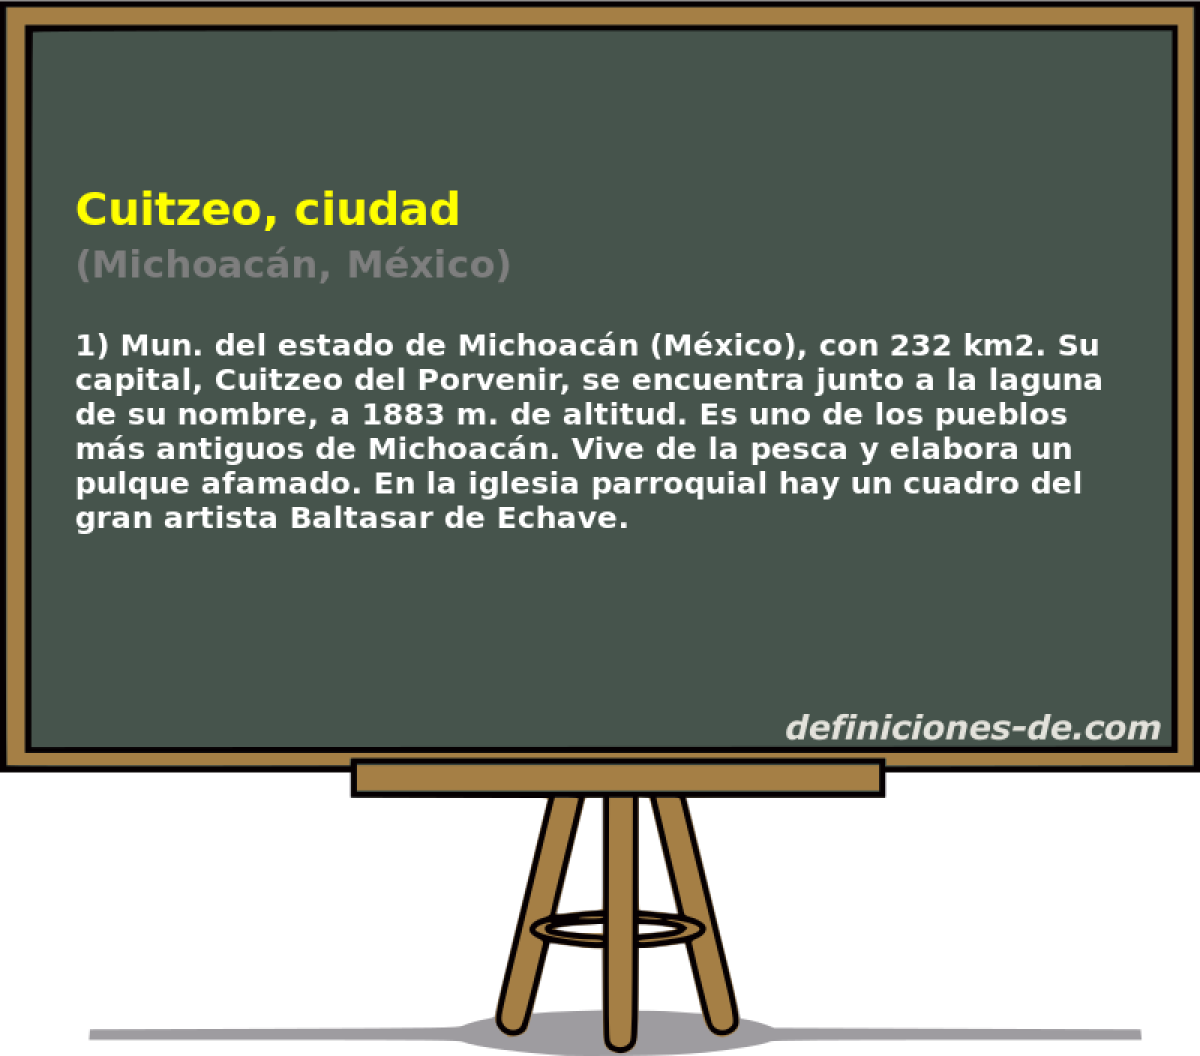 Cuitzeo, ciudad (Michoacn, Mxico)